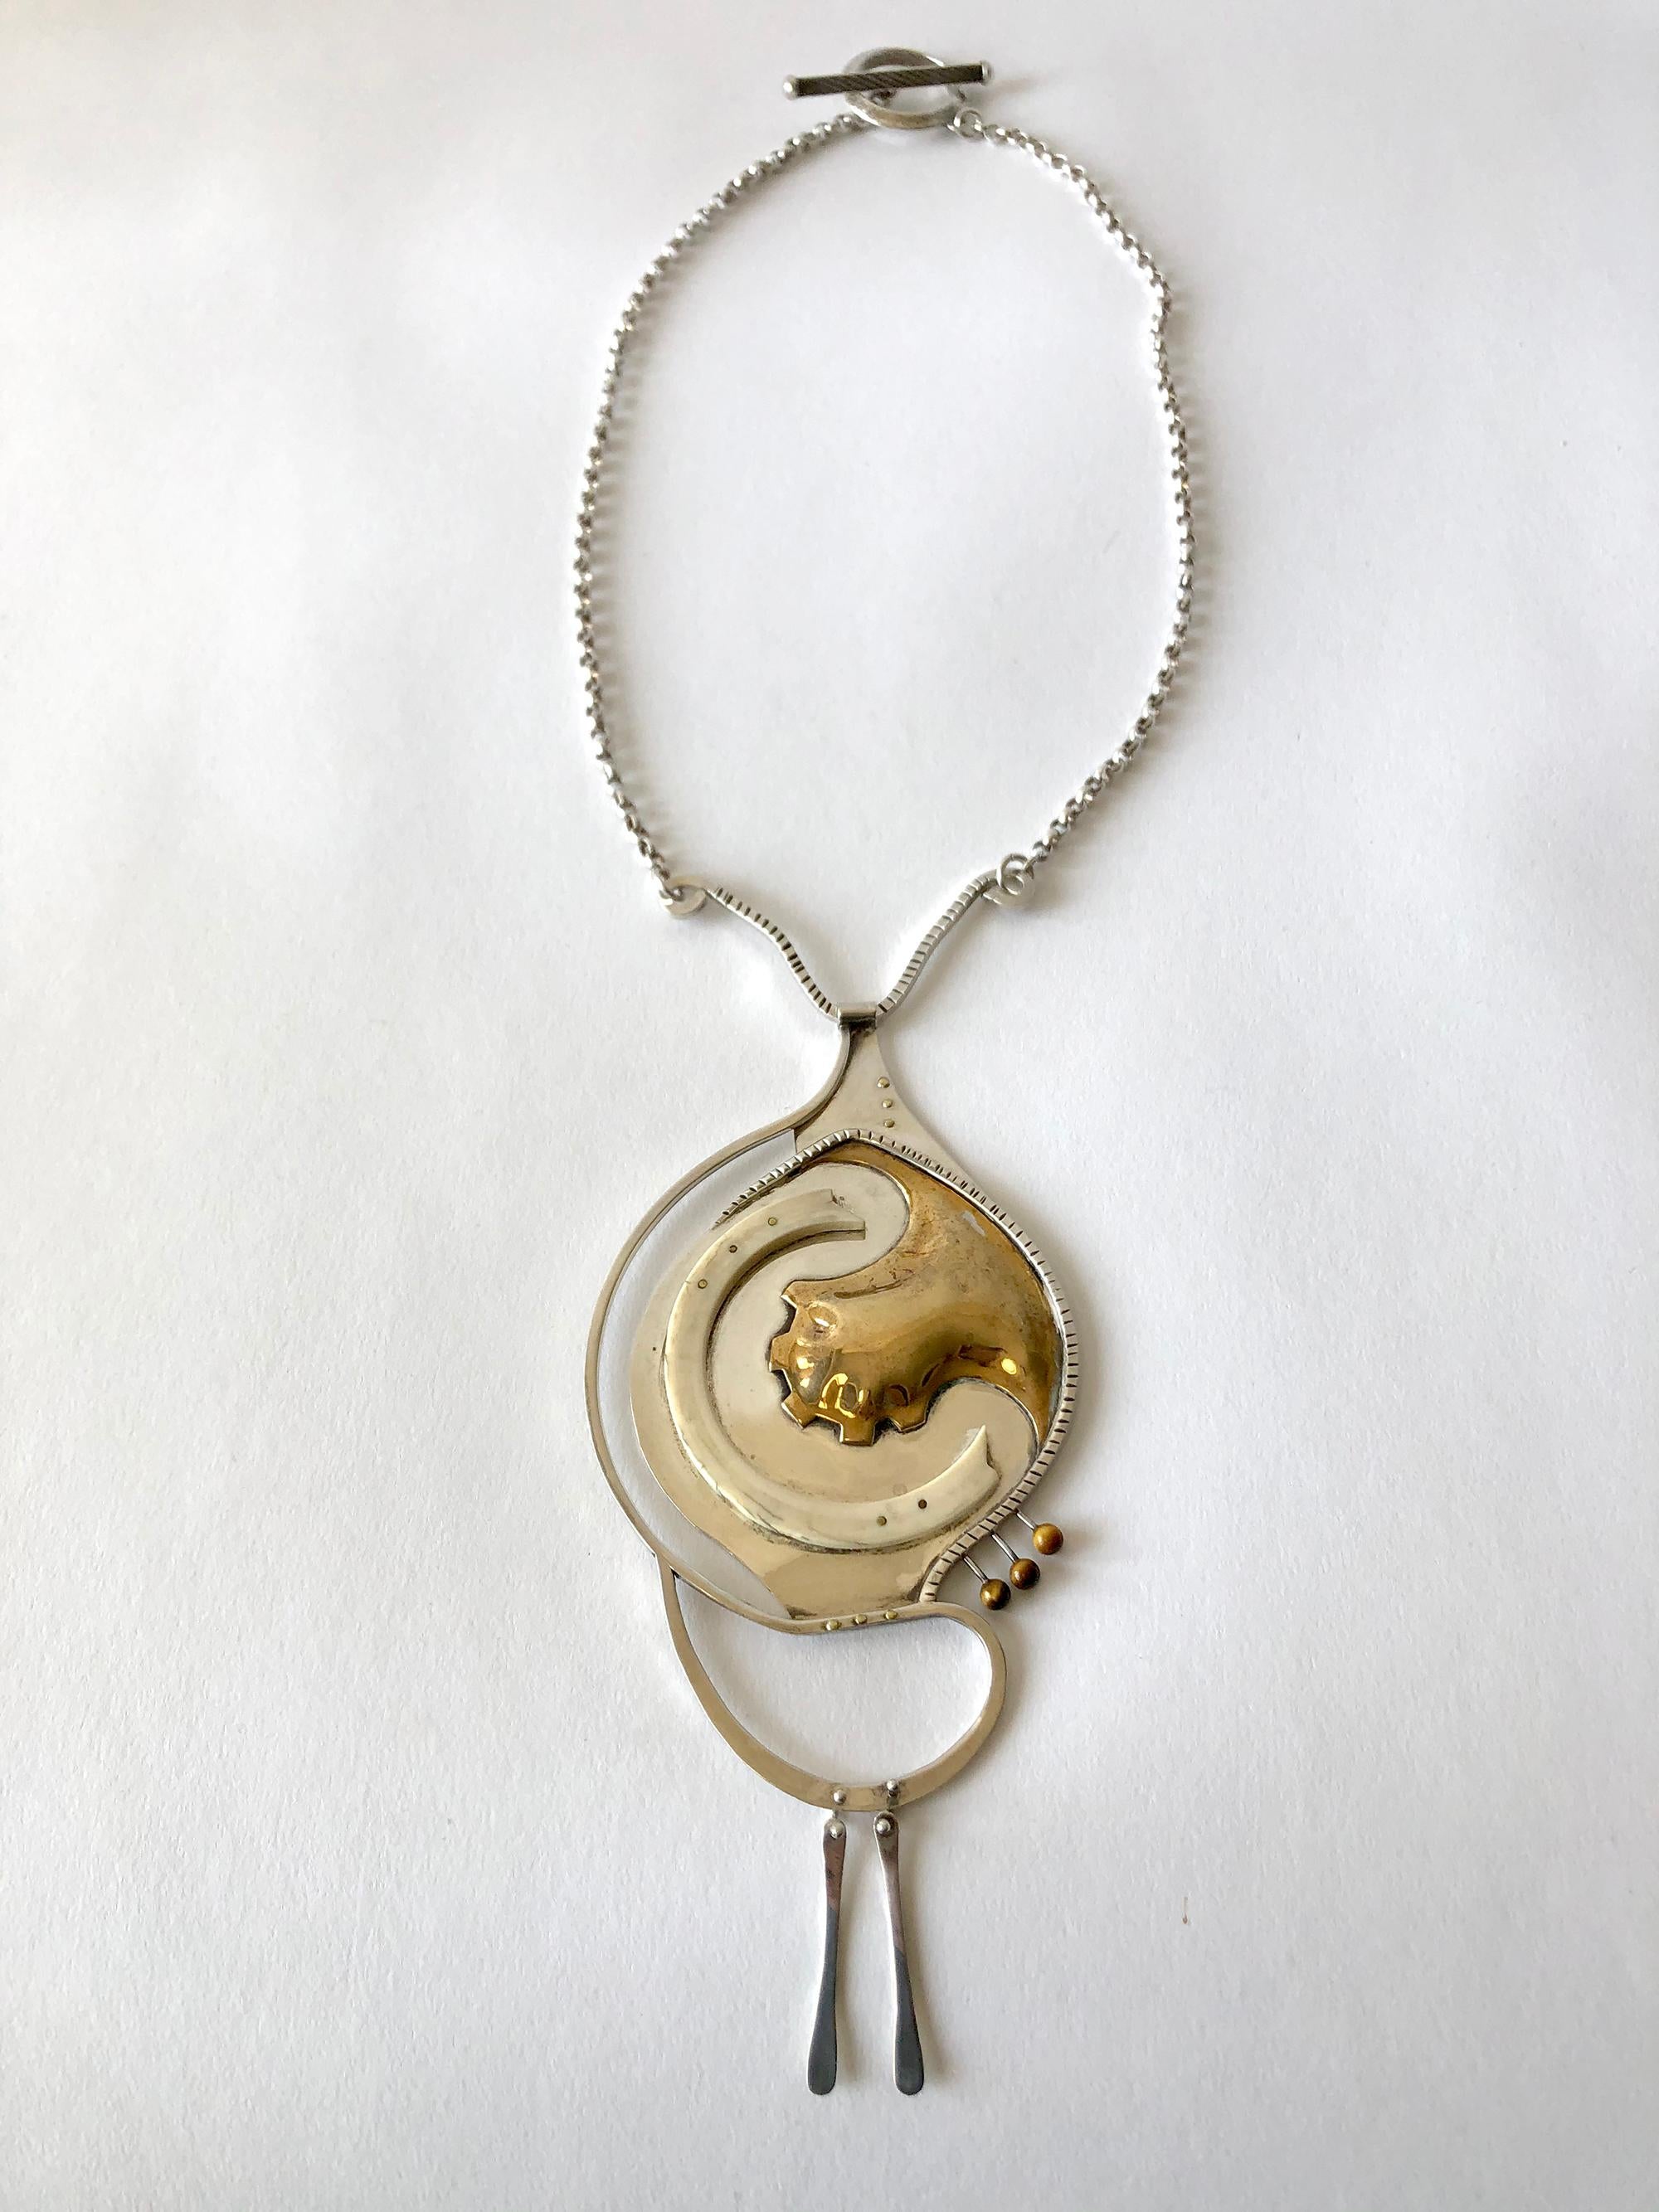 Collier des années 1970 en argent sterling et or, fait à la main, avec un œil de tigre et des clous en or.  Le pendentif du collier mesure 7,5